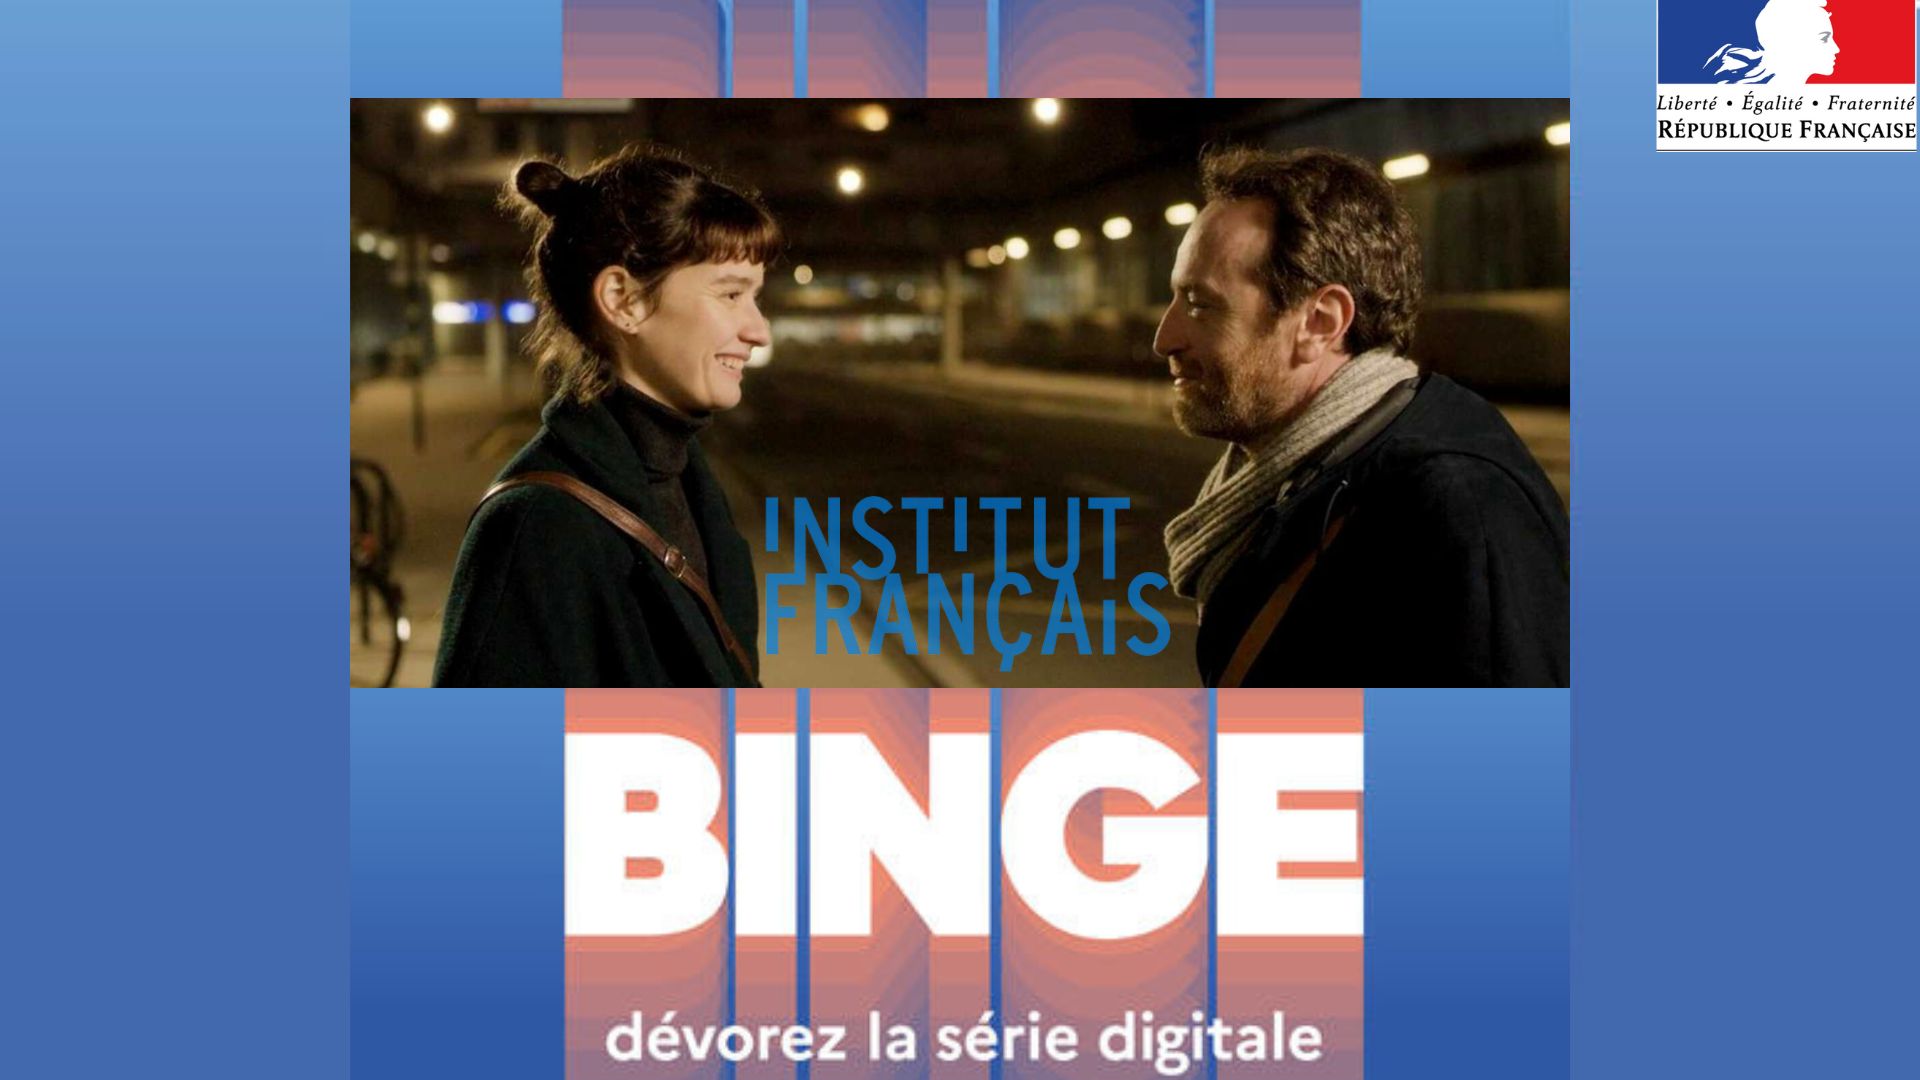 Binge valoriser la série courte et digitale française